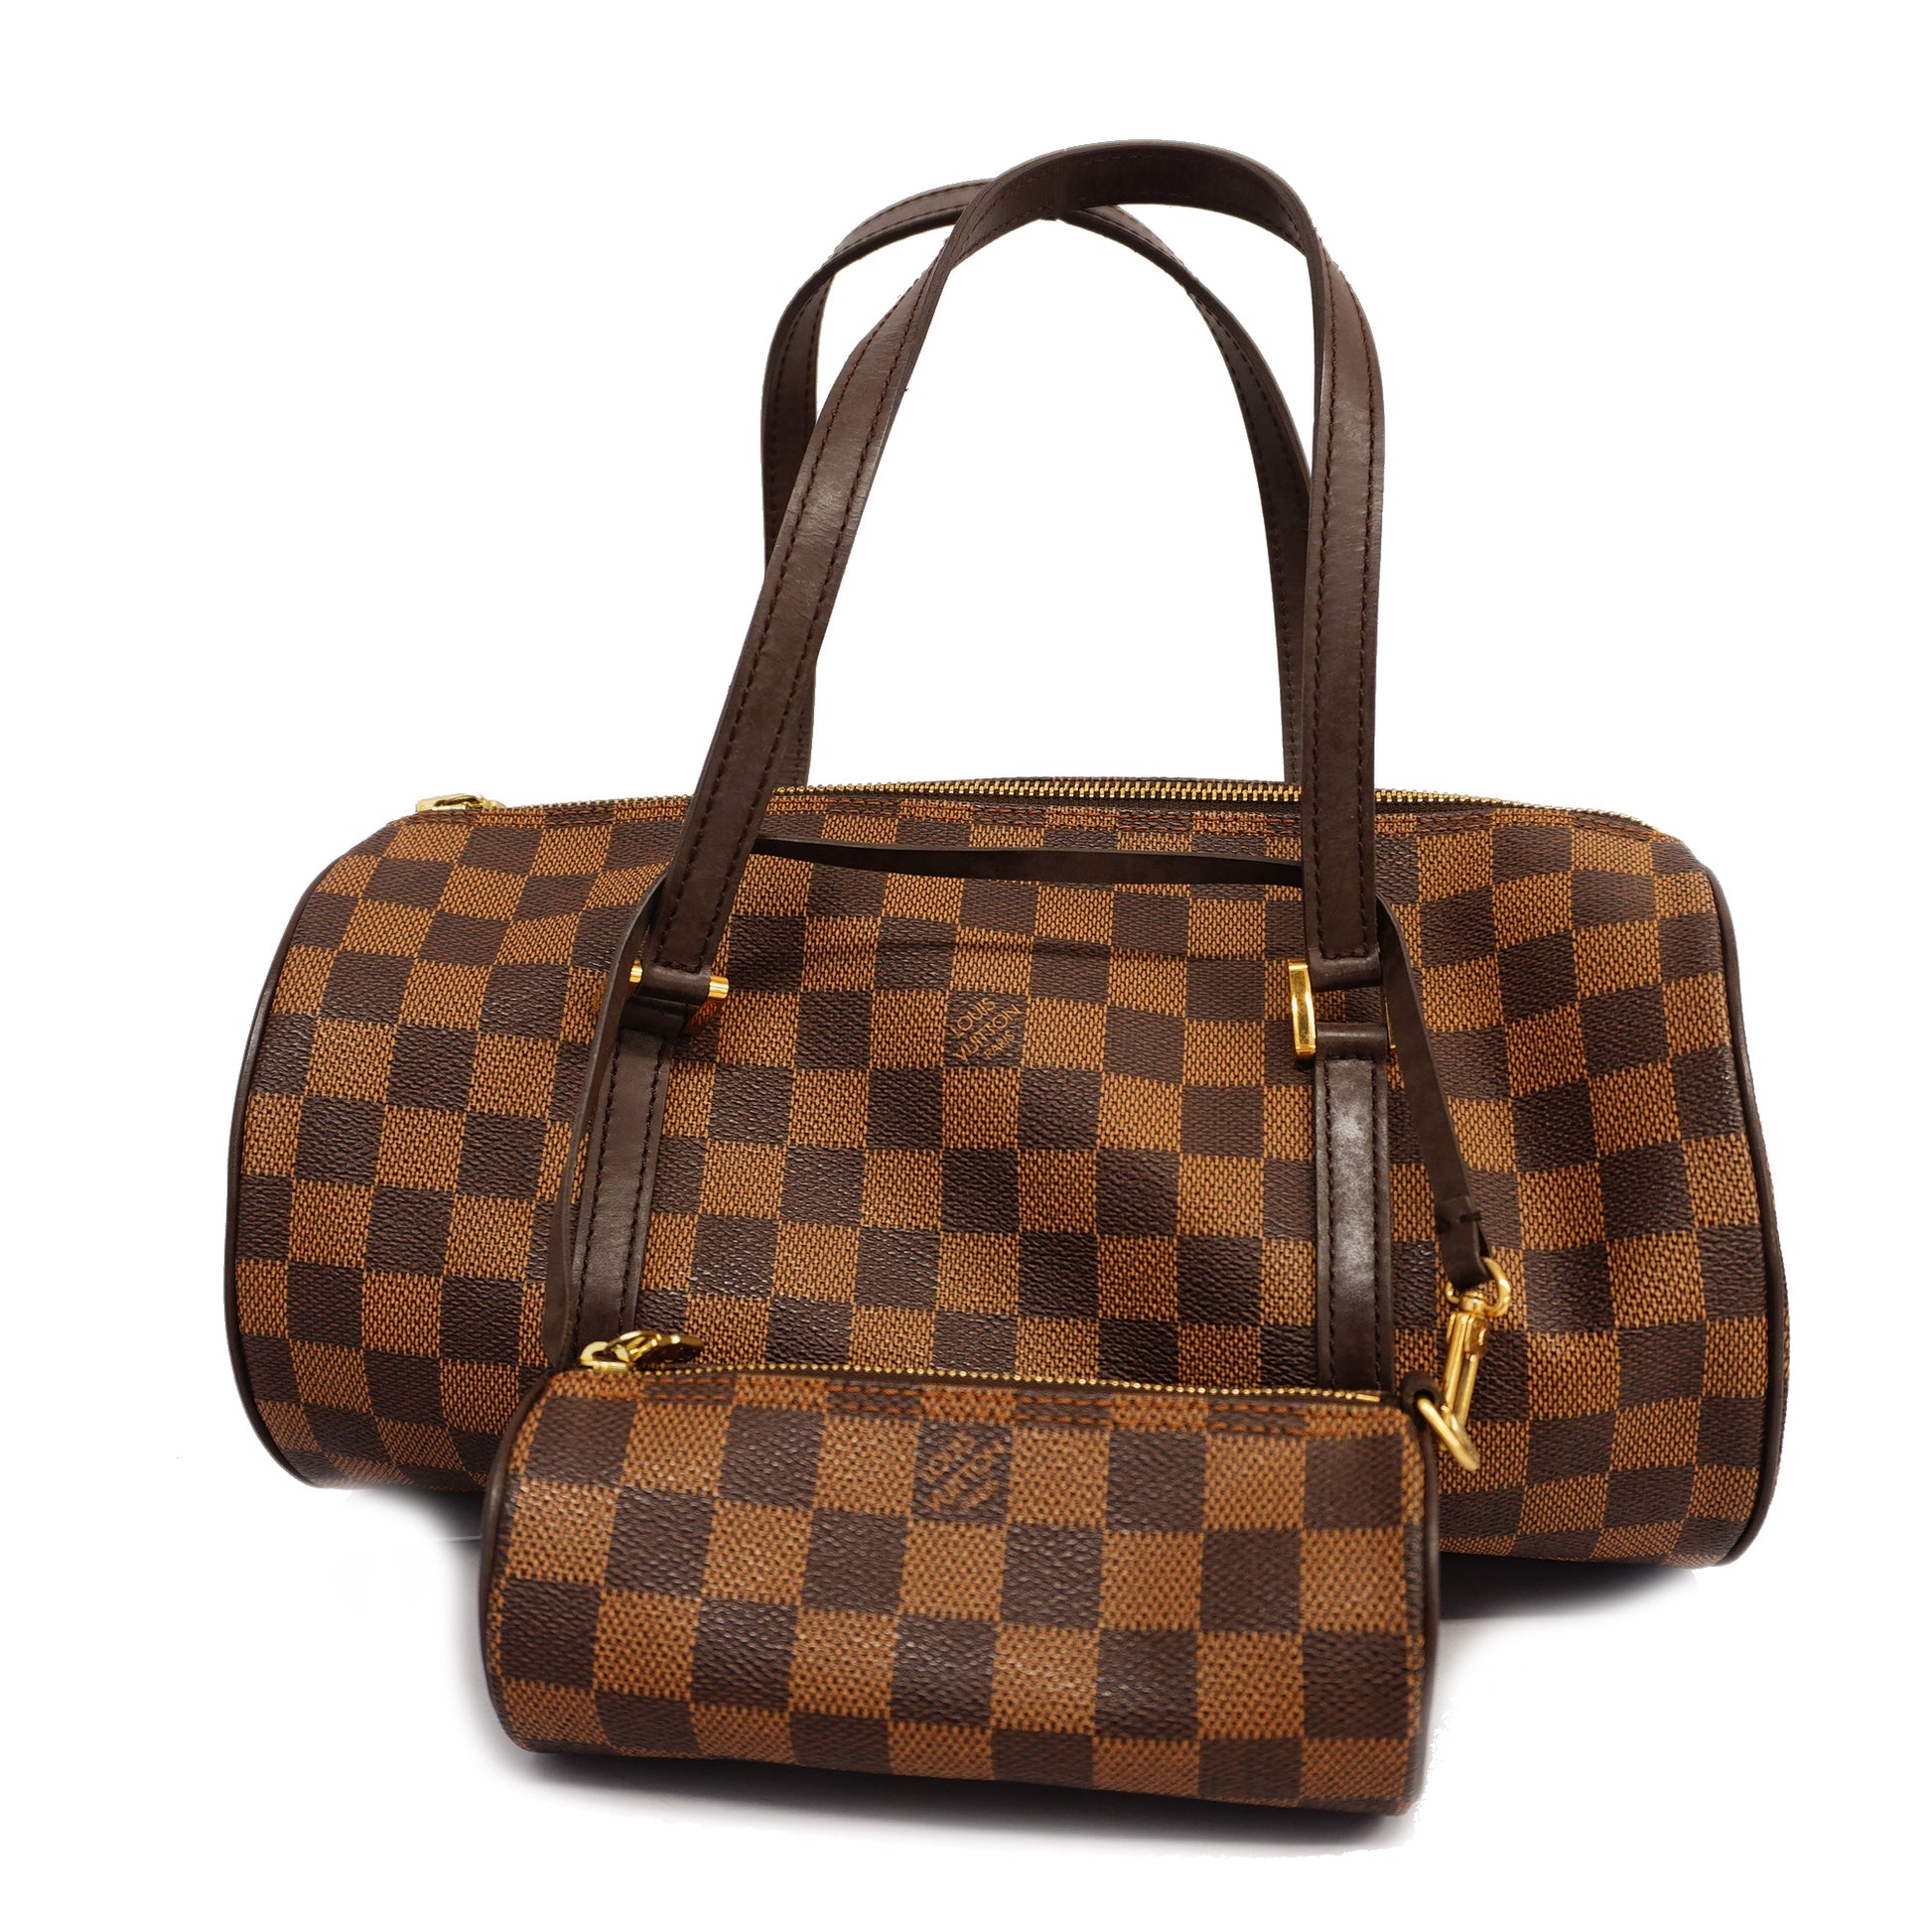 Authentic Louis Vuitton Damier Papillon 30 Hand Bag Purse N51303